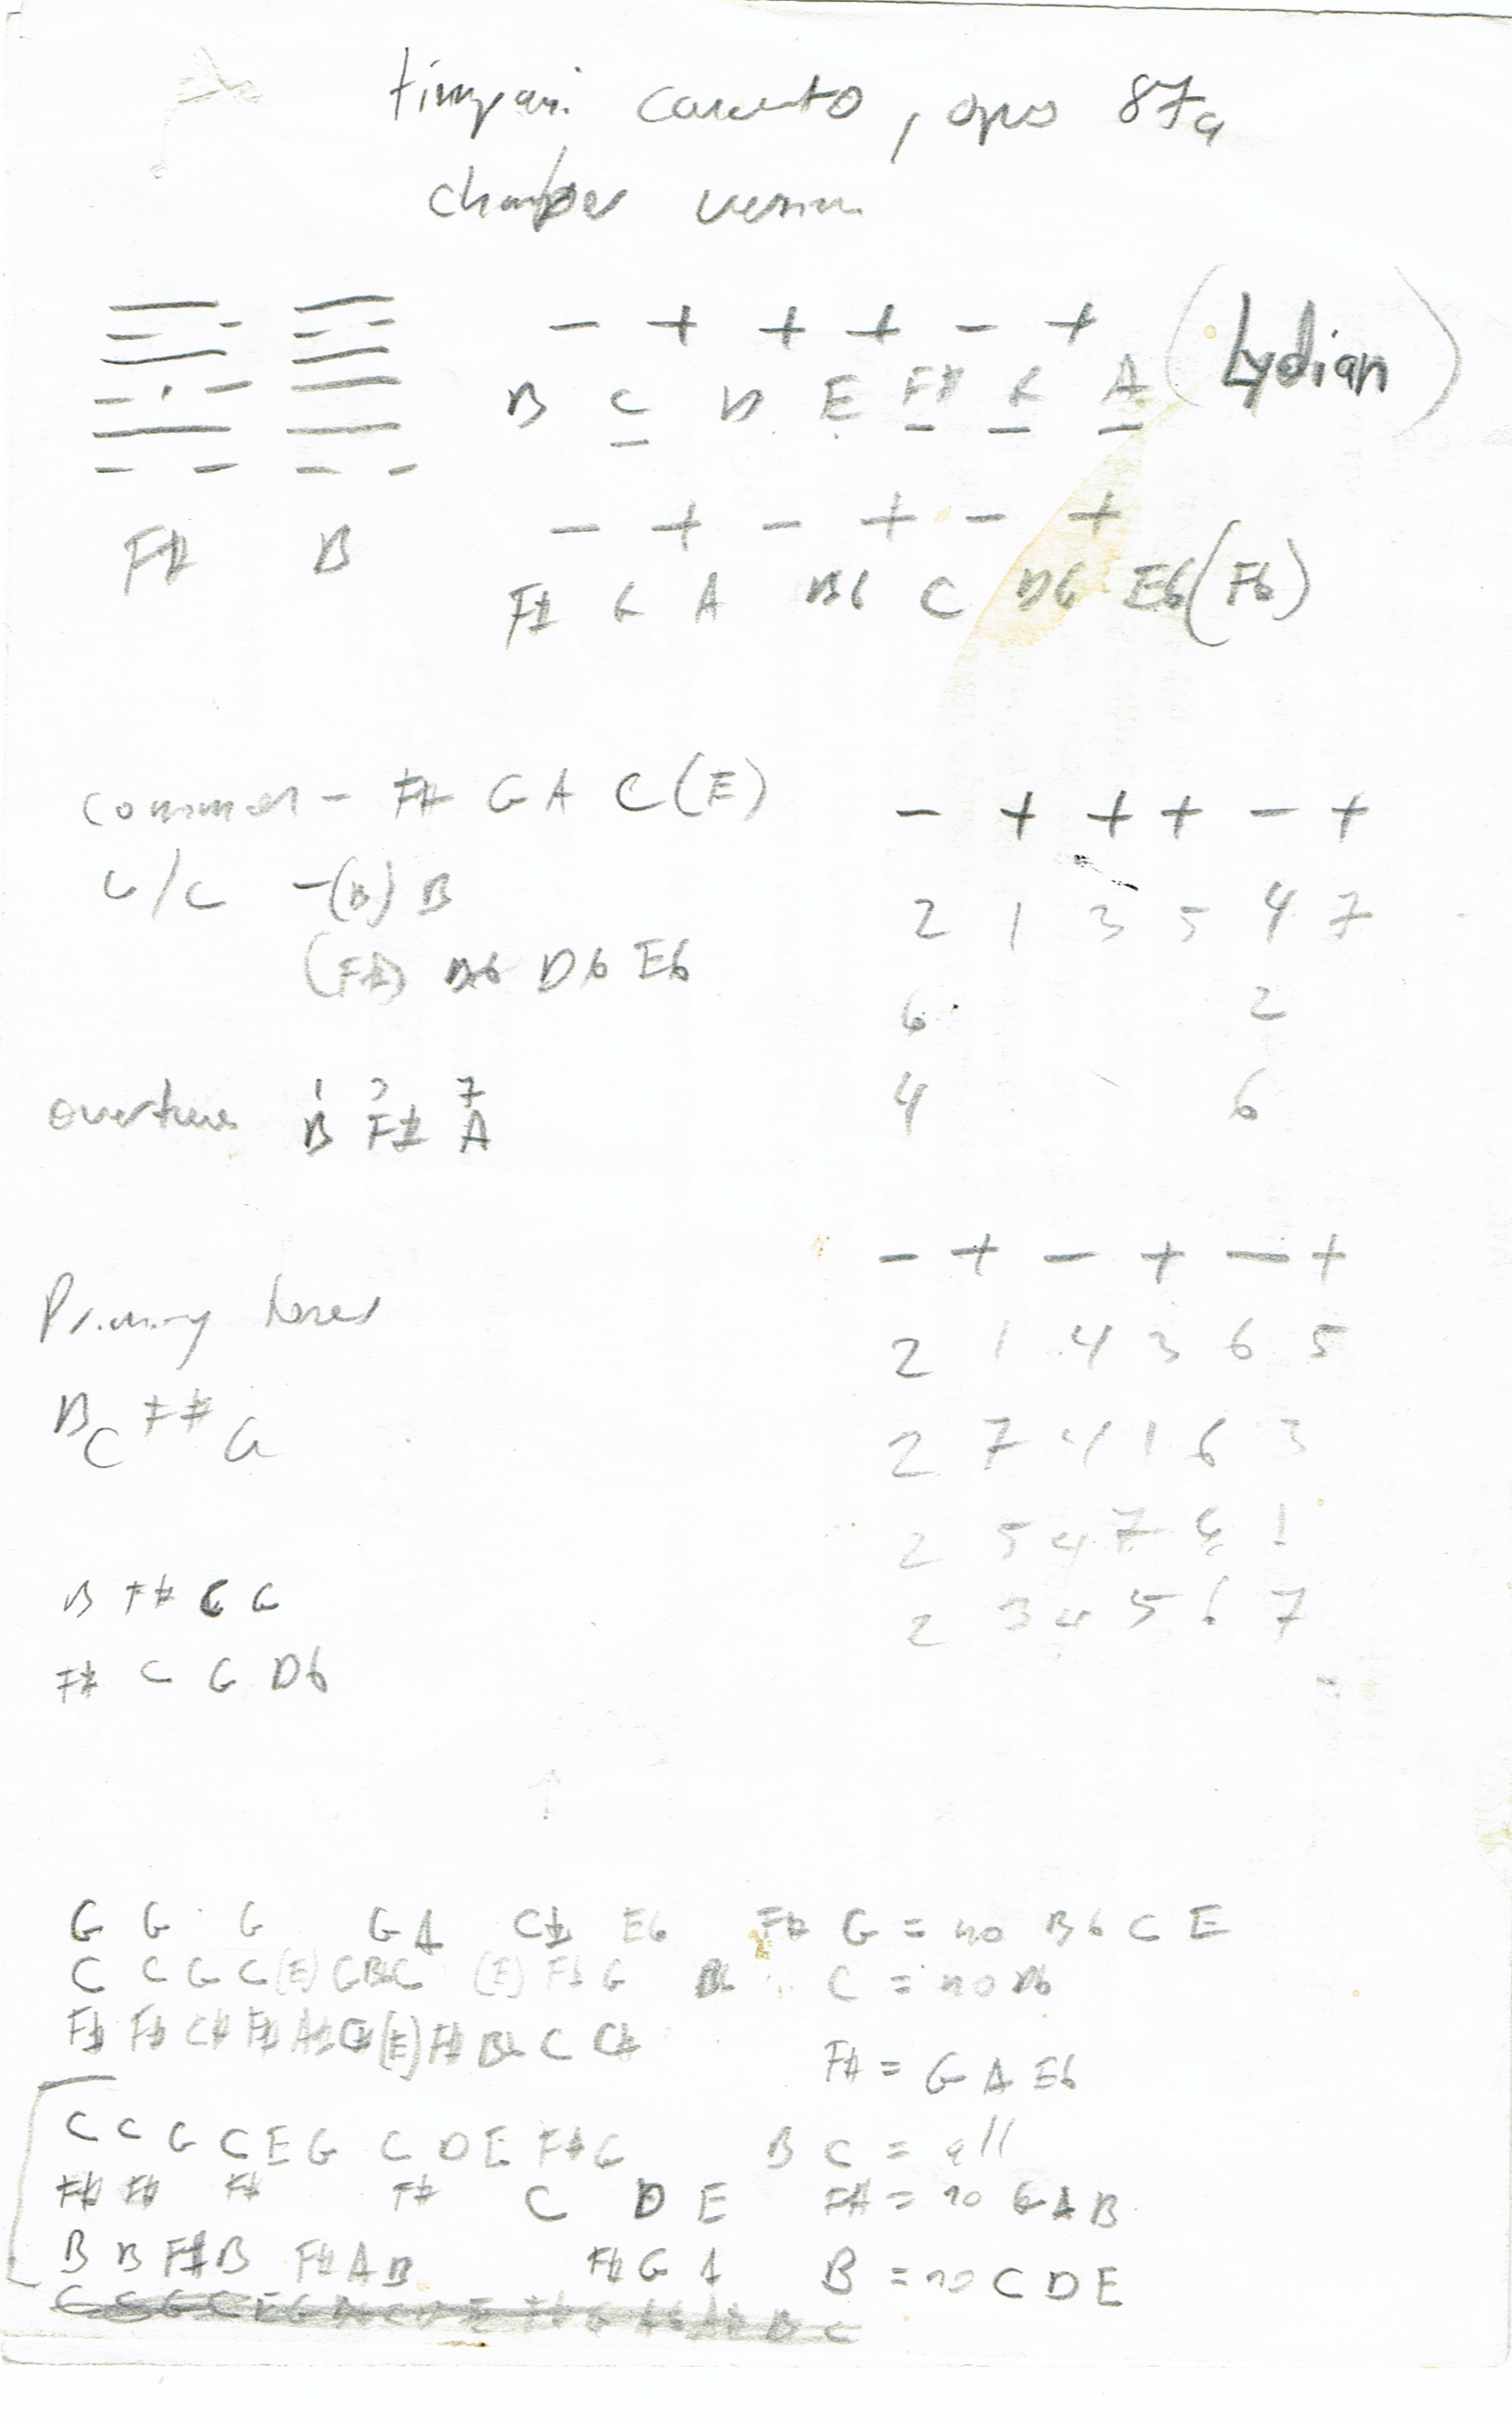 Formation chart for Burdick's timpani concerto